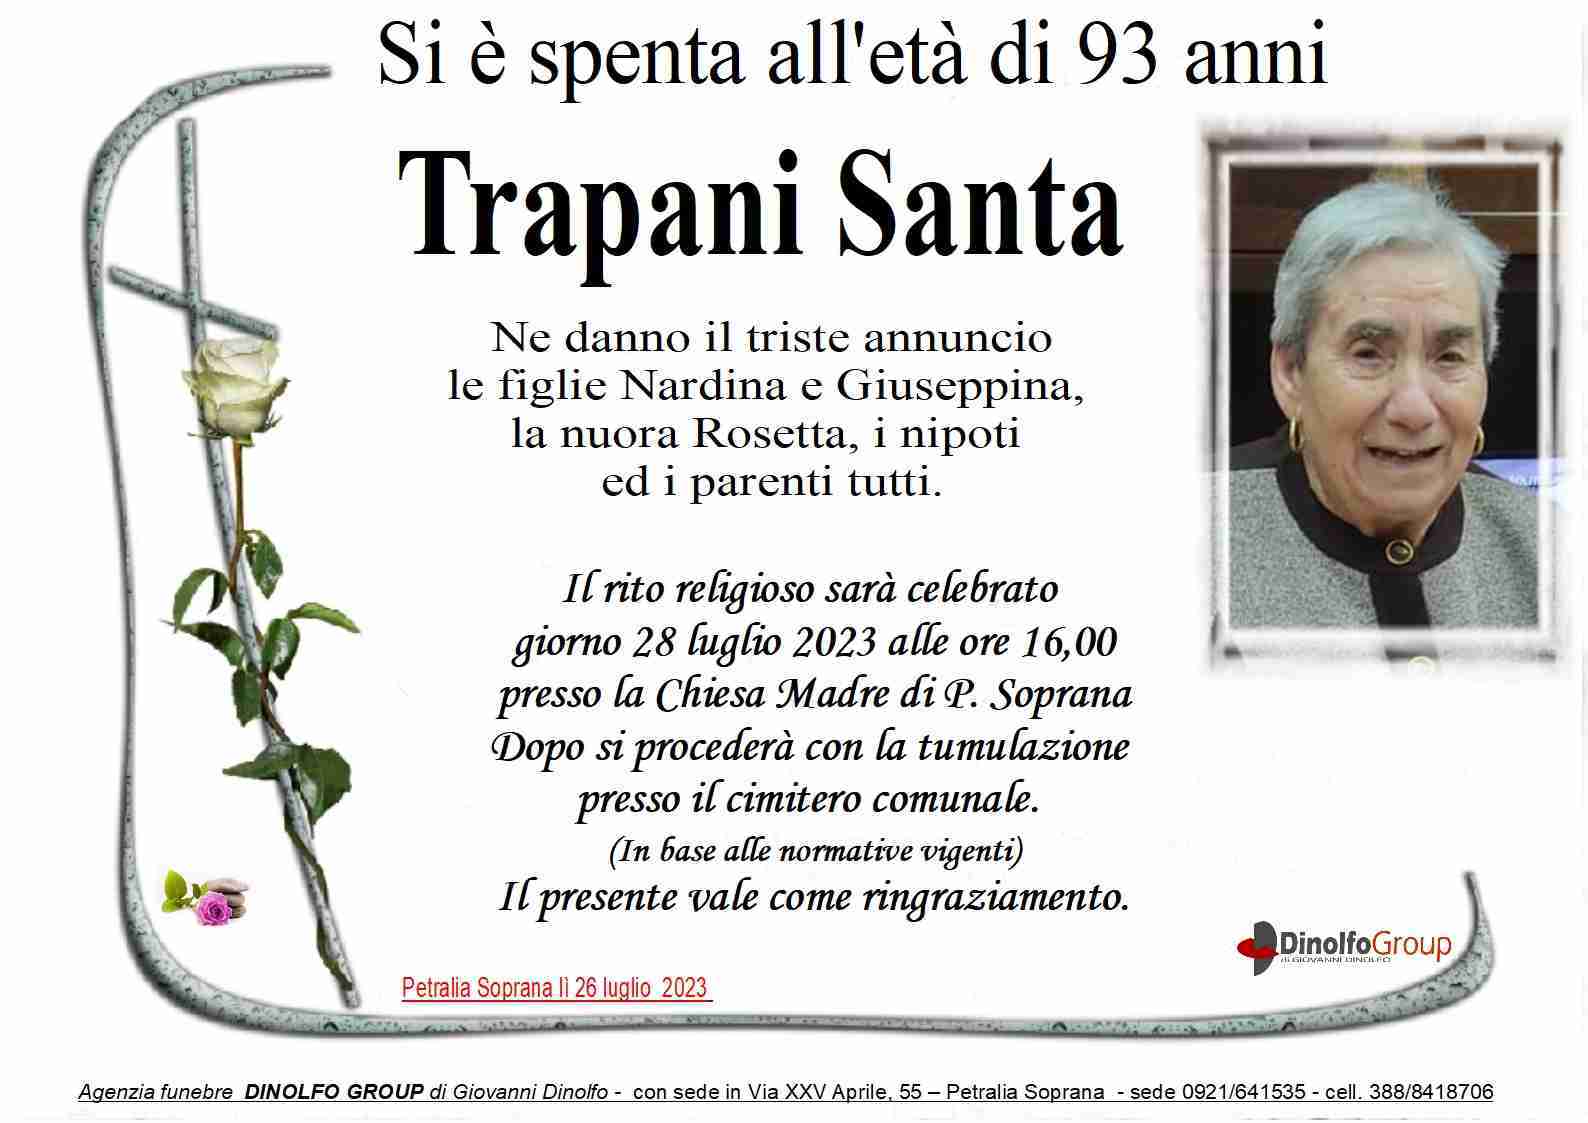 Santa Trapani